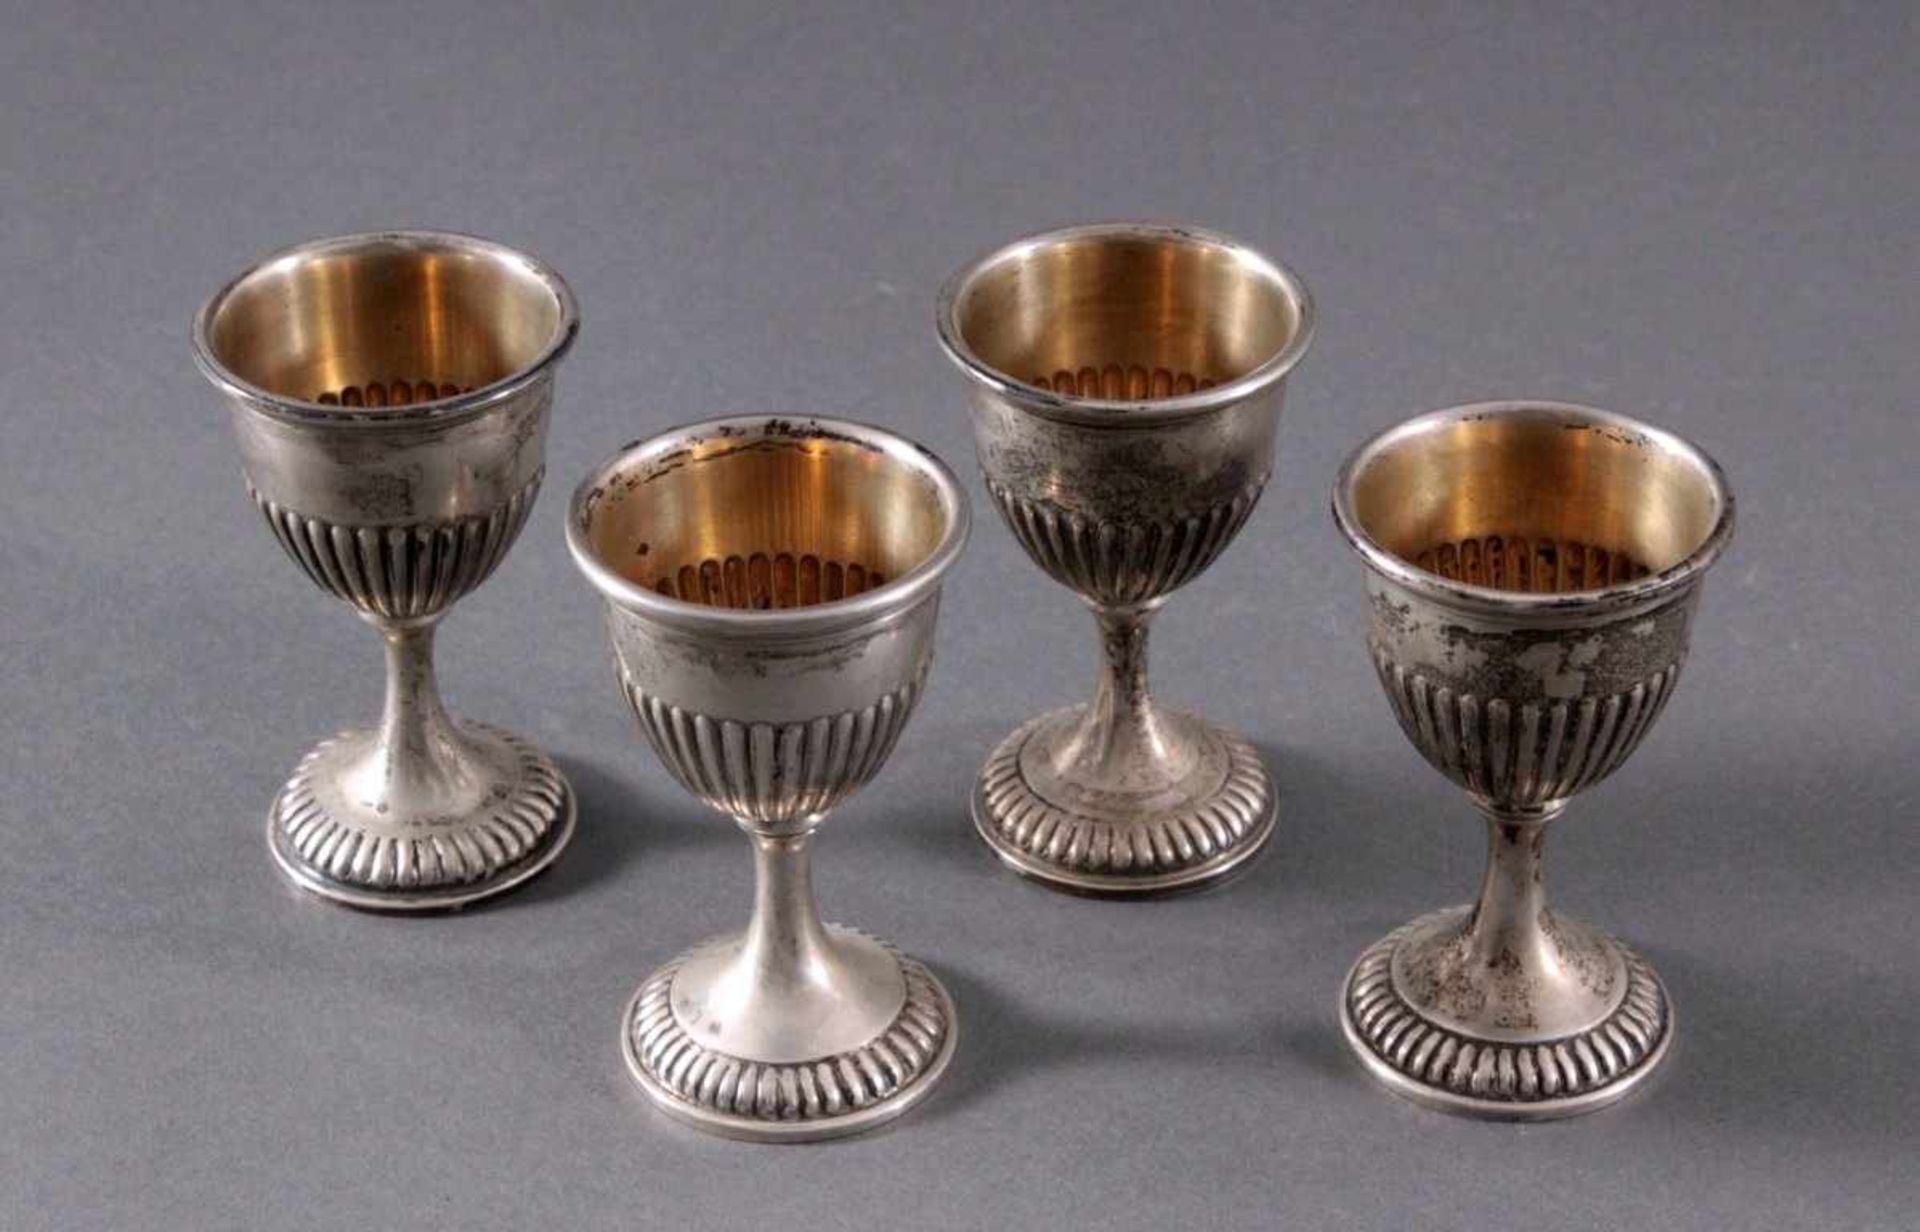 4 silberne Eierbecher um 1900Deutsche Punze Sichel und Krone 800er Silber, ca. Höhe 7 cm,191 g. - Image 2 of 4